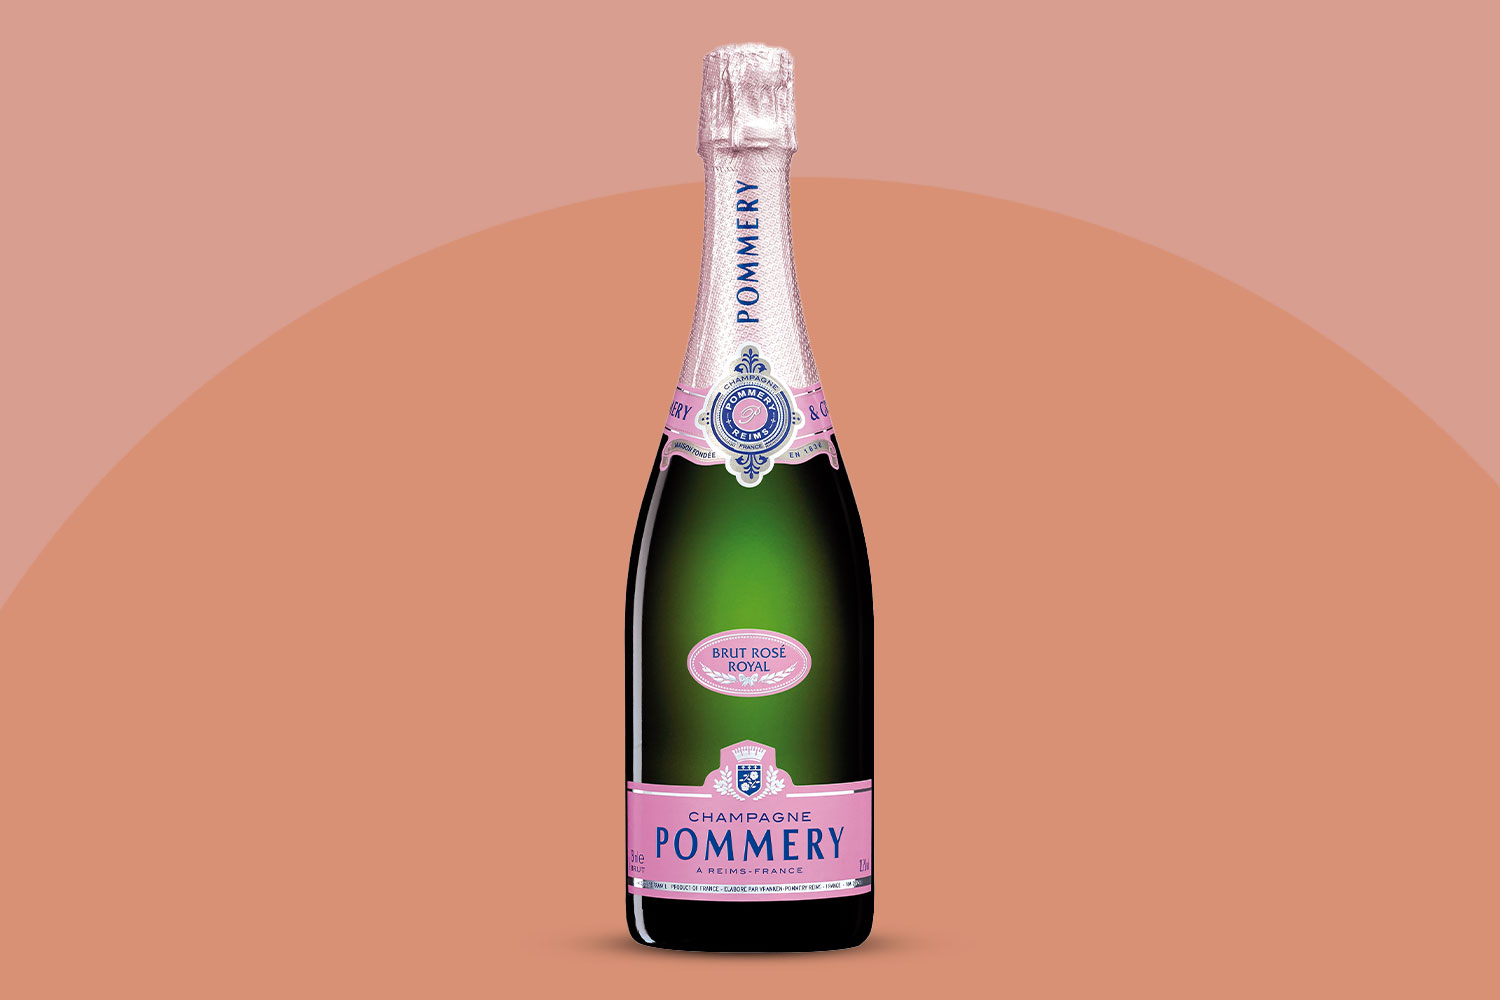 Champagne Pommery Brut Rosé Royal